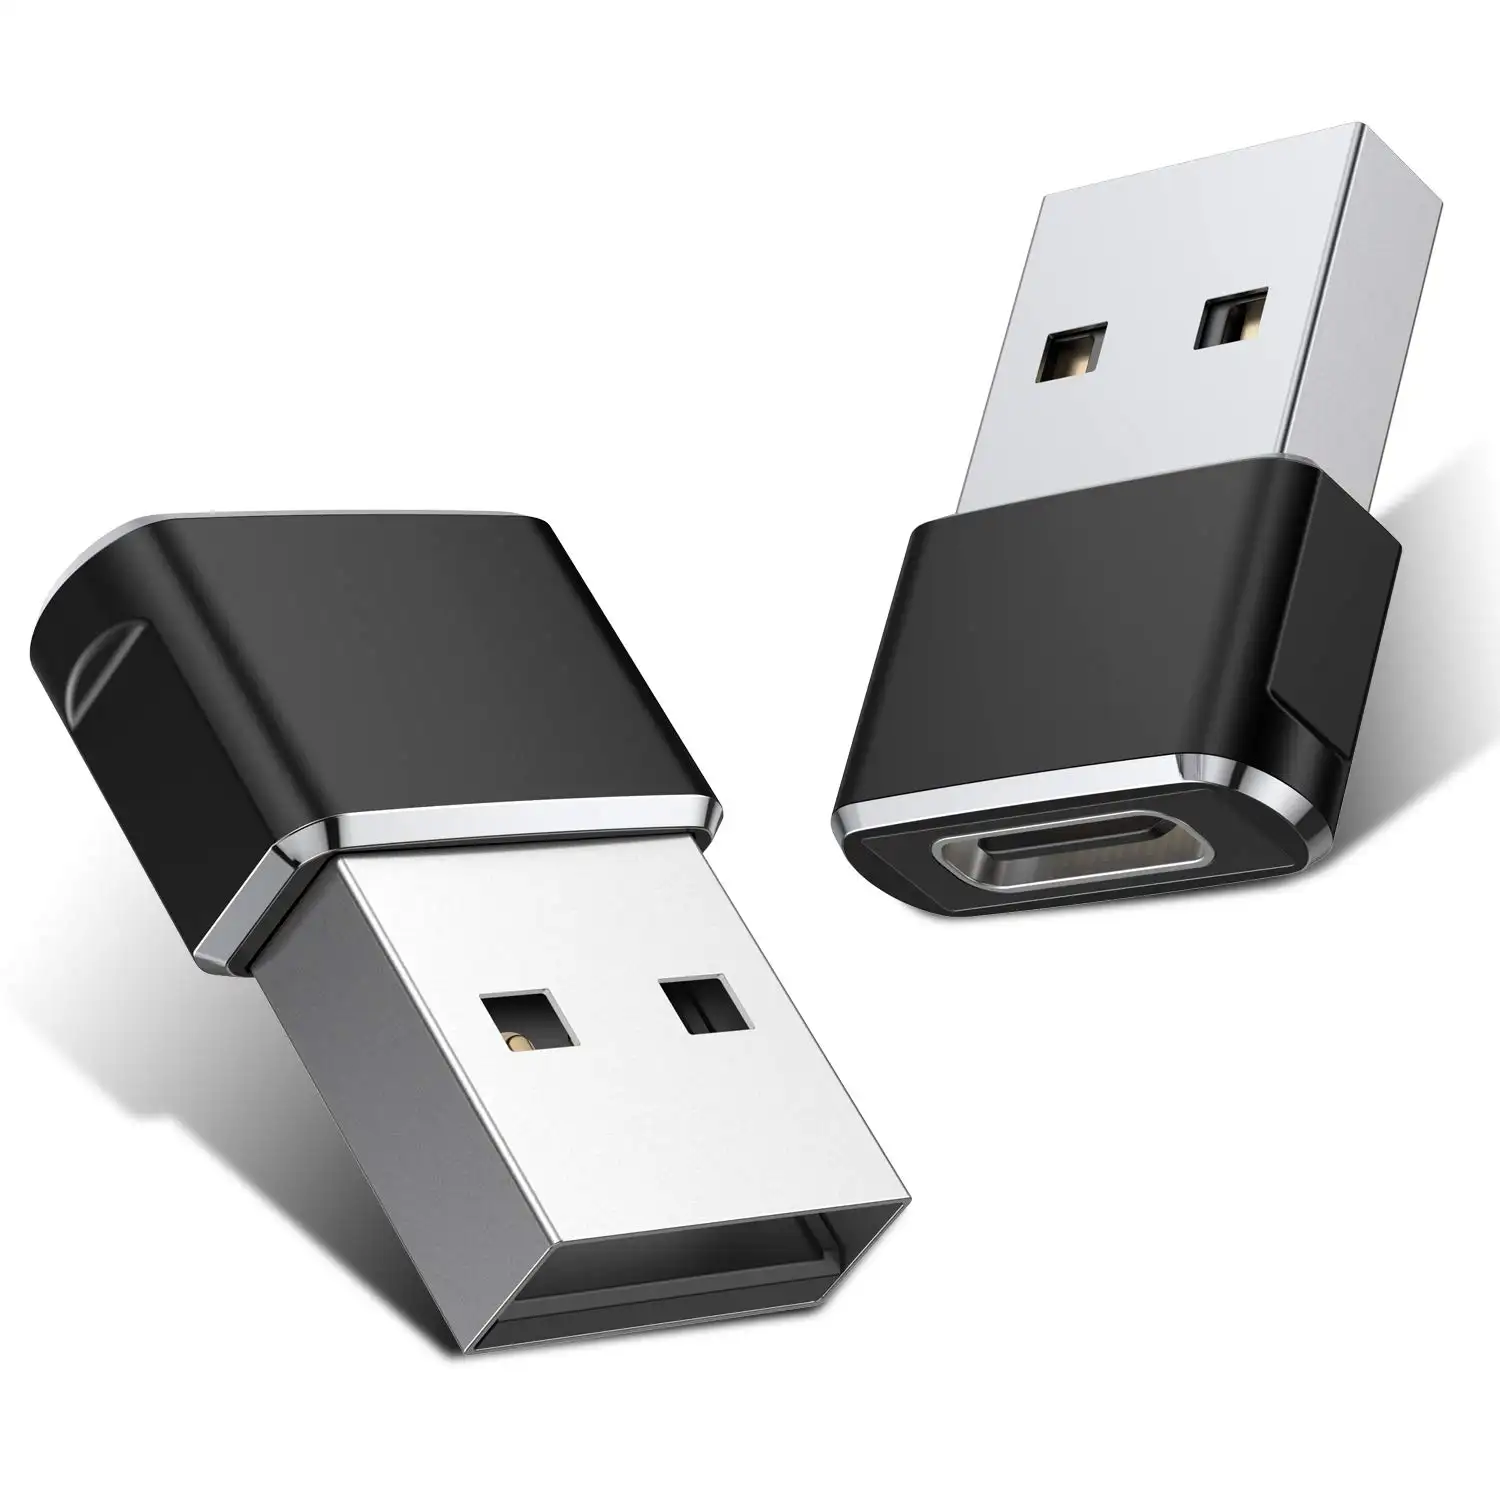 Adaptador USB C fêmea para USB A macho, cabo de liga de alumínio tipo C, adaptador de carregador para iP 11 12